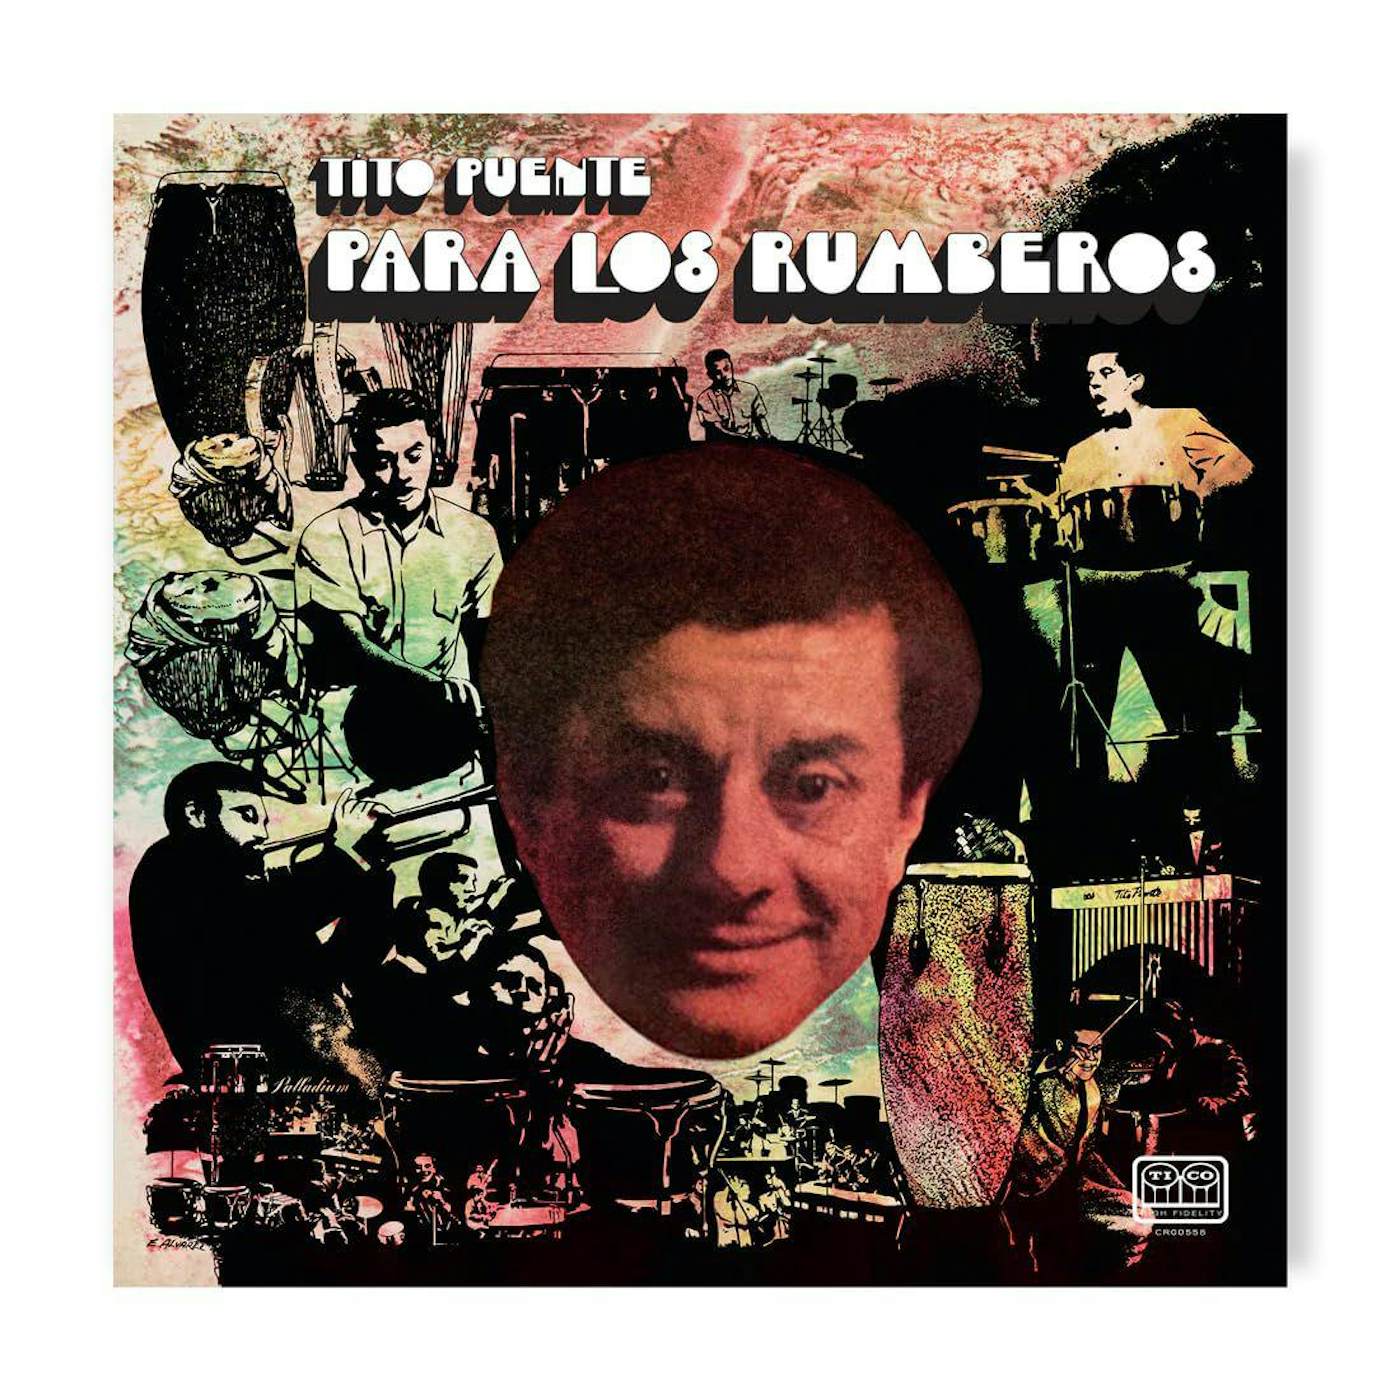 Tito Puente Para Los Rumberos (Green Guava) Vinyl Record